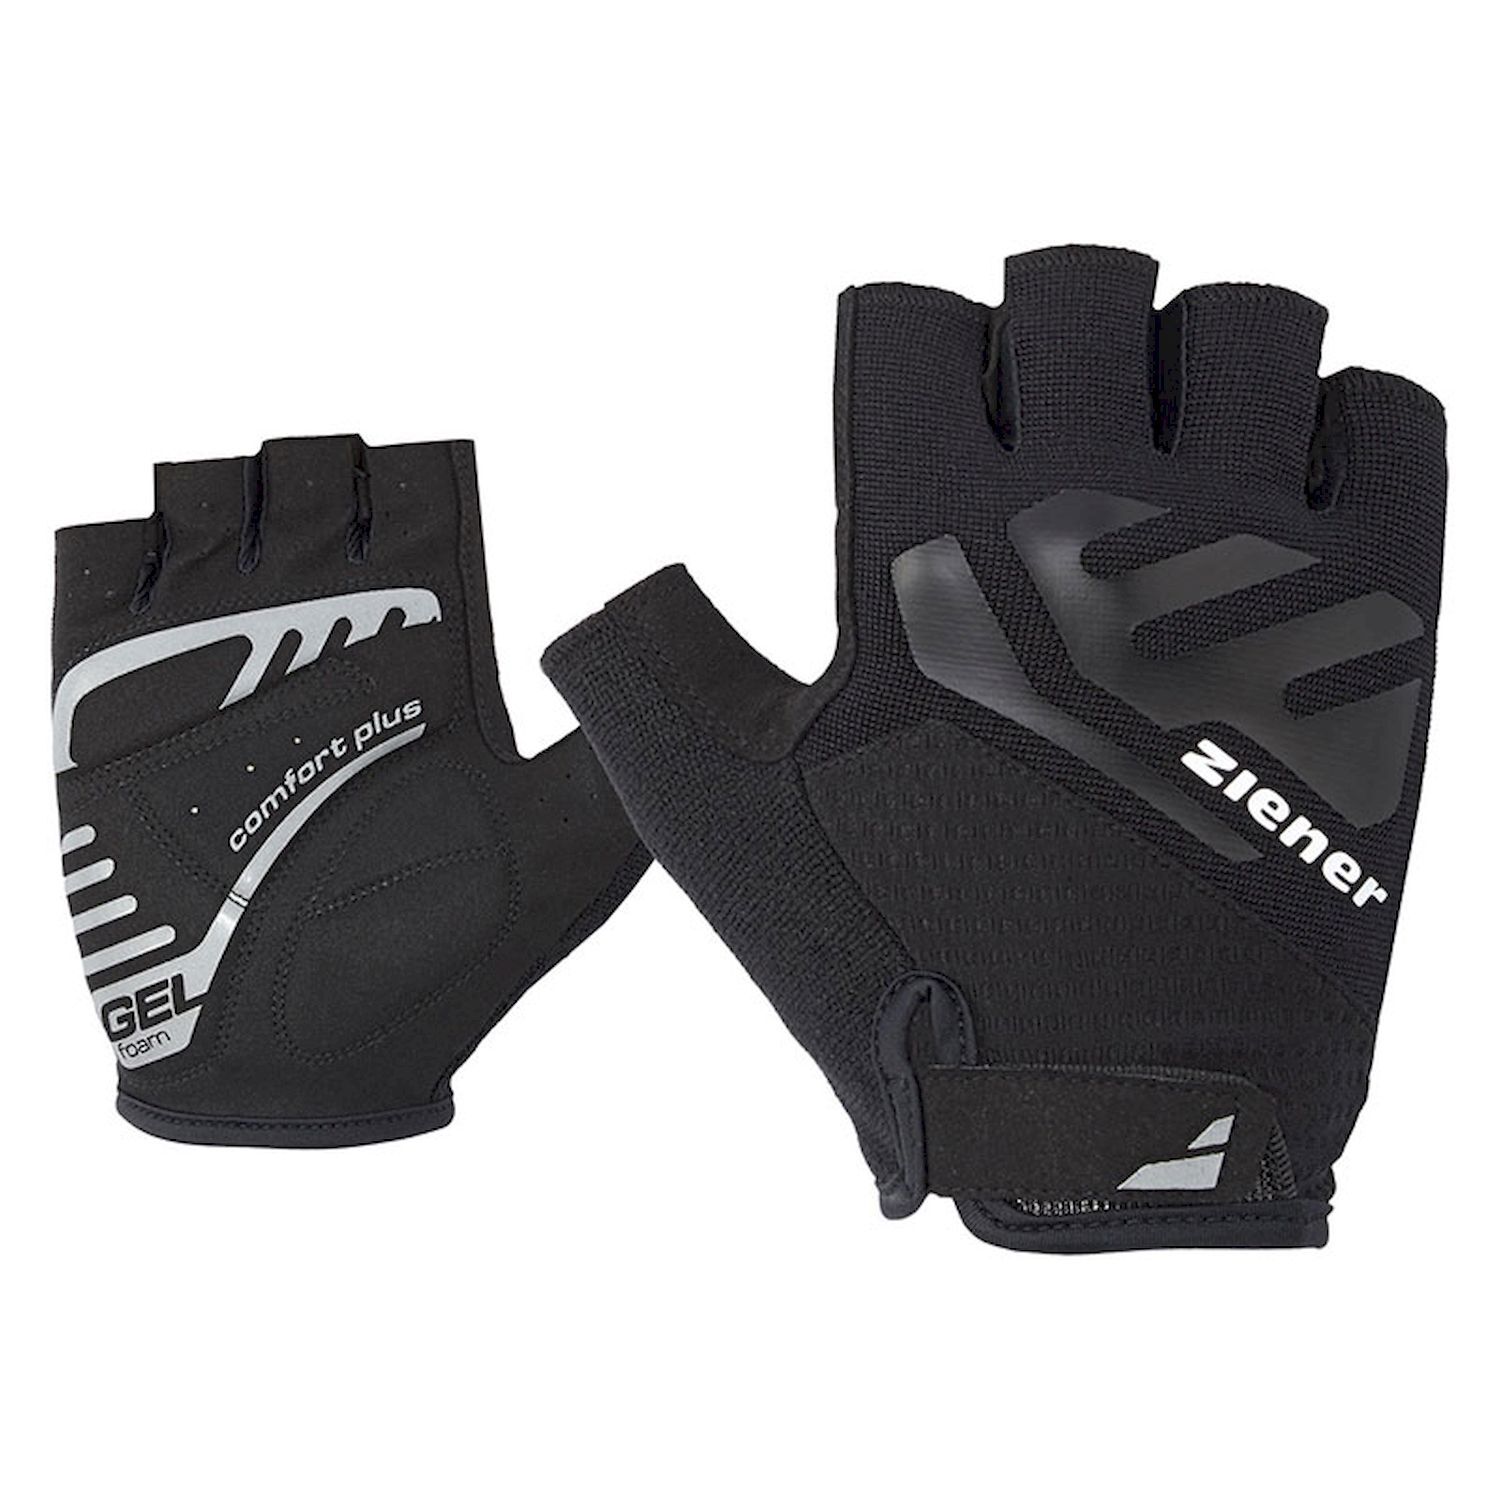 Ziener Caecilius - Cycling gloves - Men's